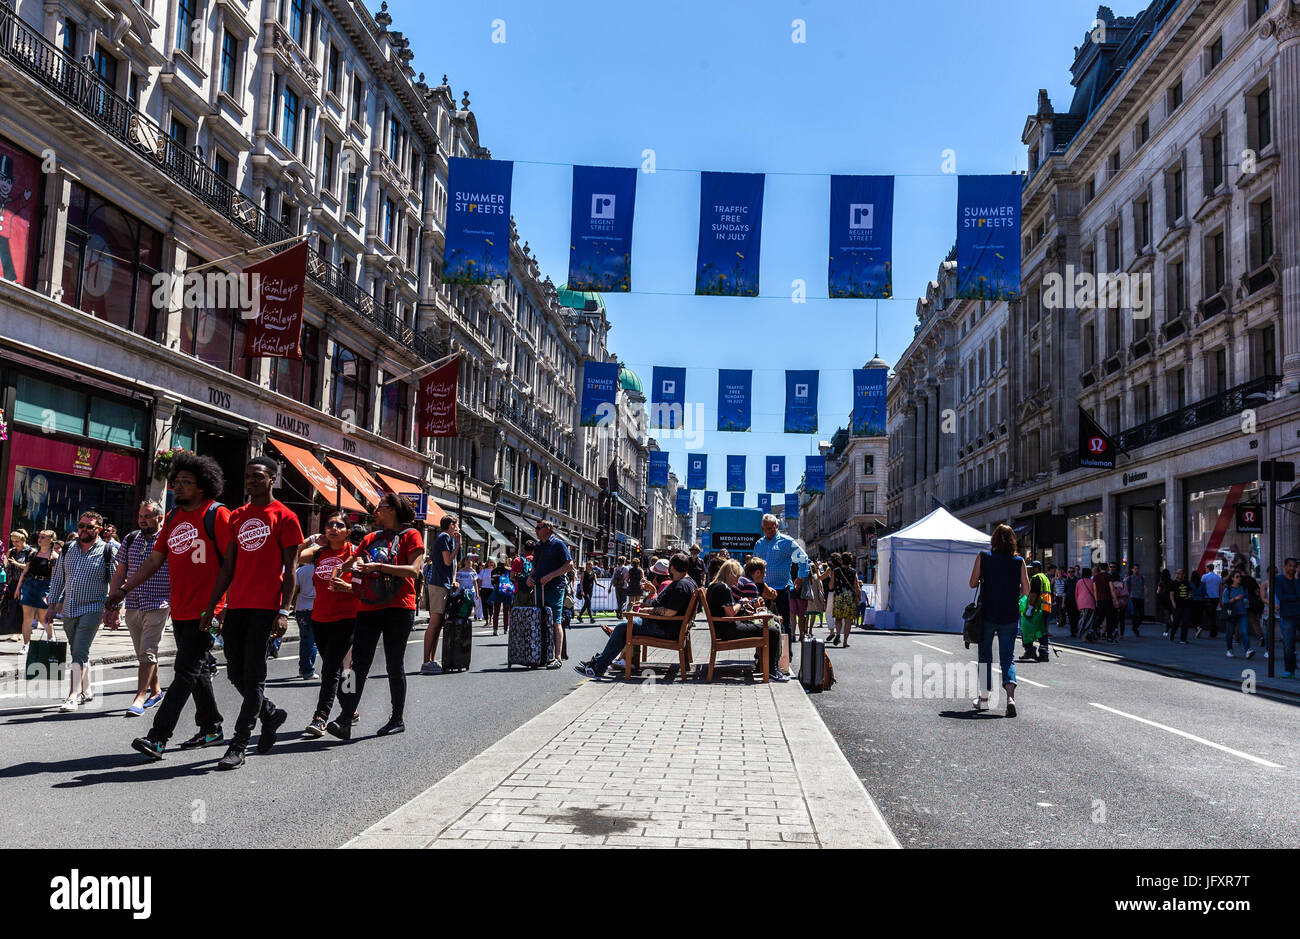 Festival rues d'été libre de circulation, Regent Street, London, England, UK Banque D'Images